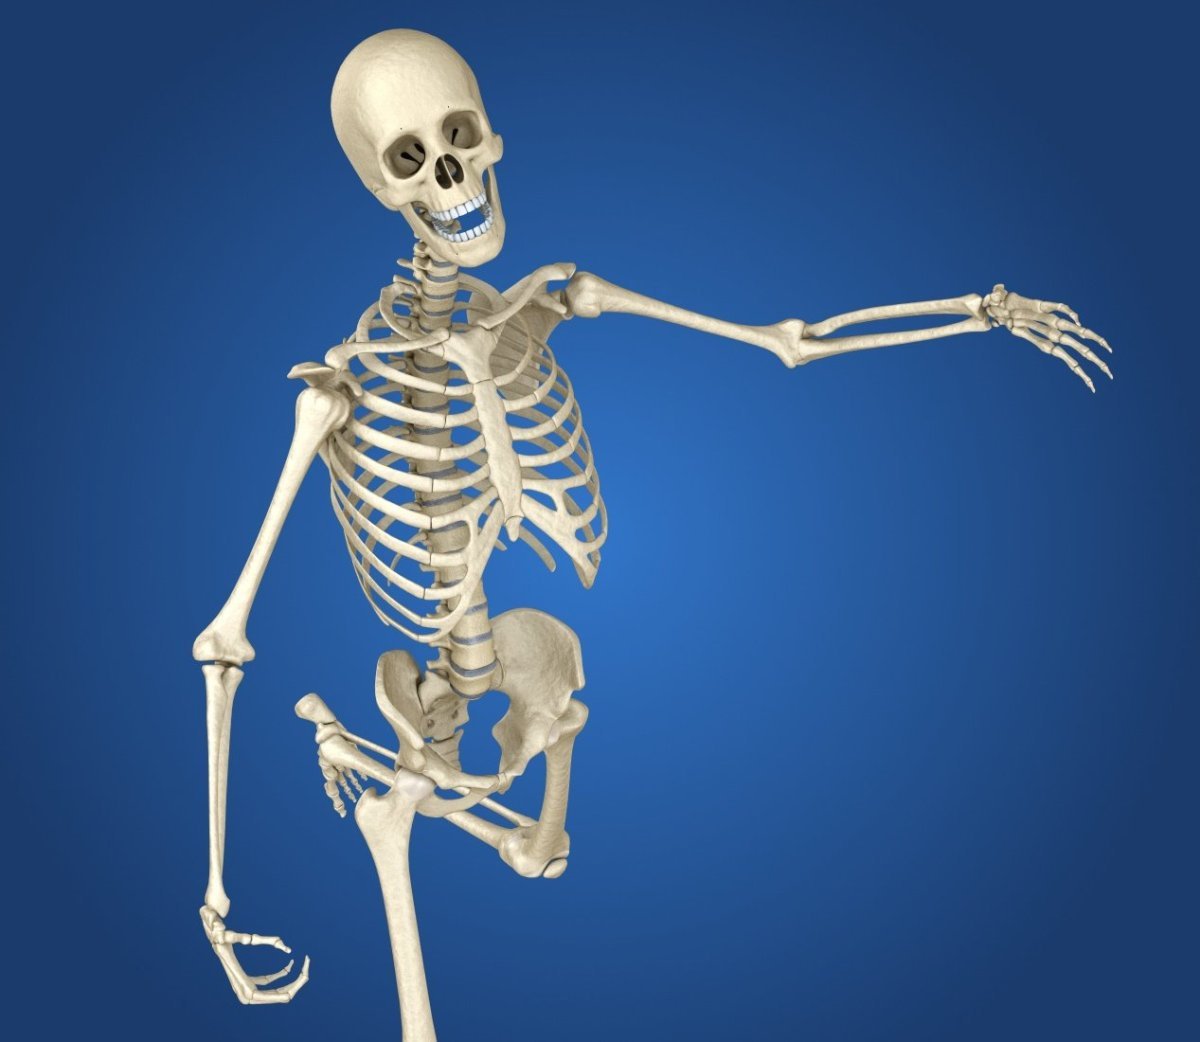 Про скелет человека